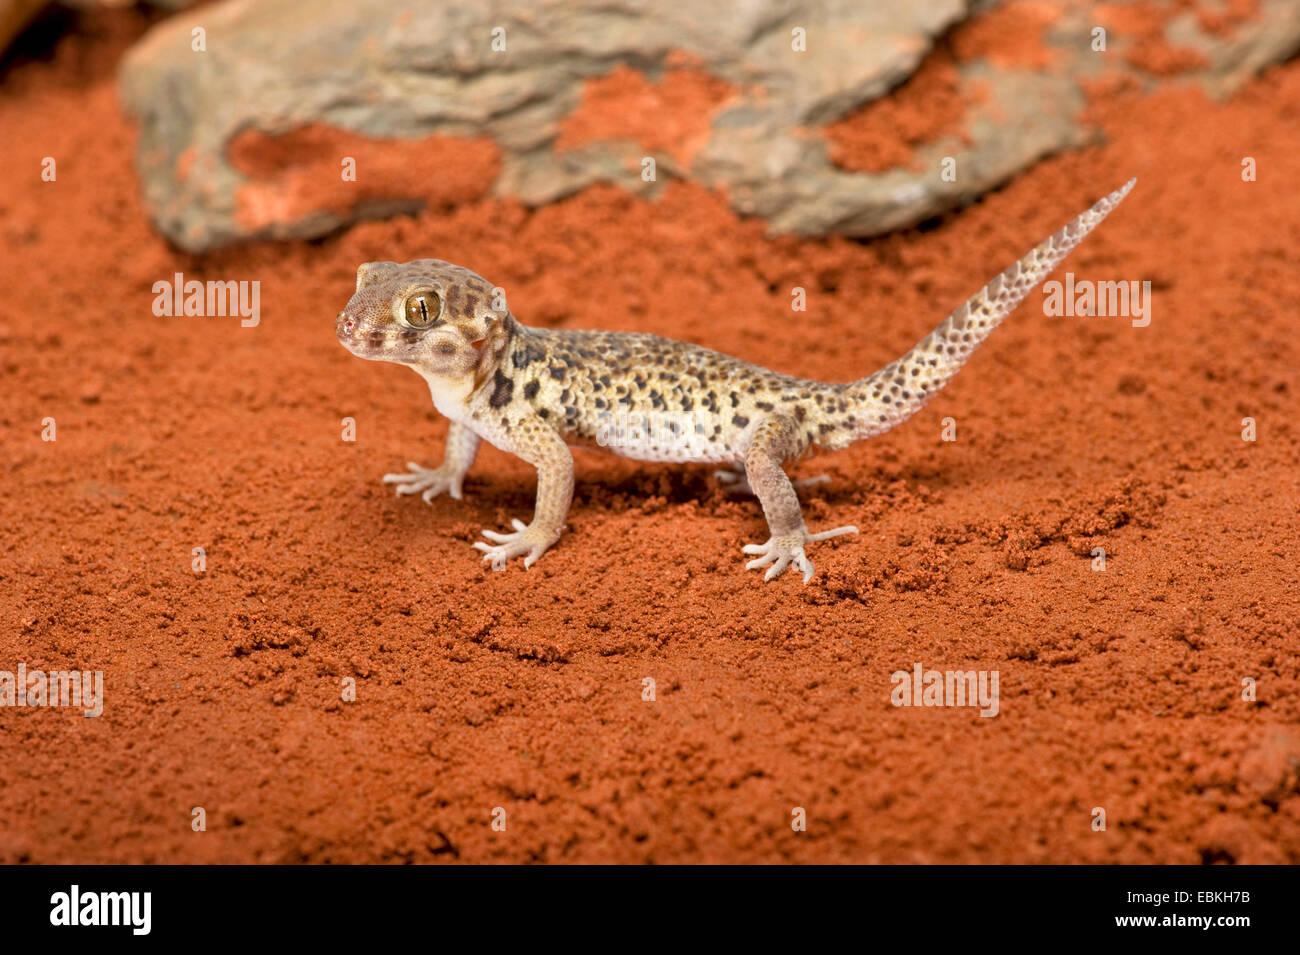 Roborowski's Frog Eyed Gecko (Teratoscincus roborowski), on red sand Stock Photo